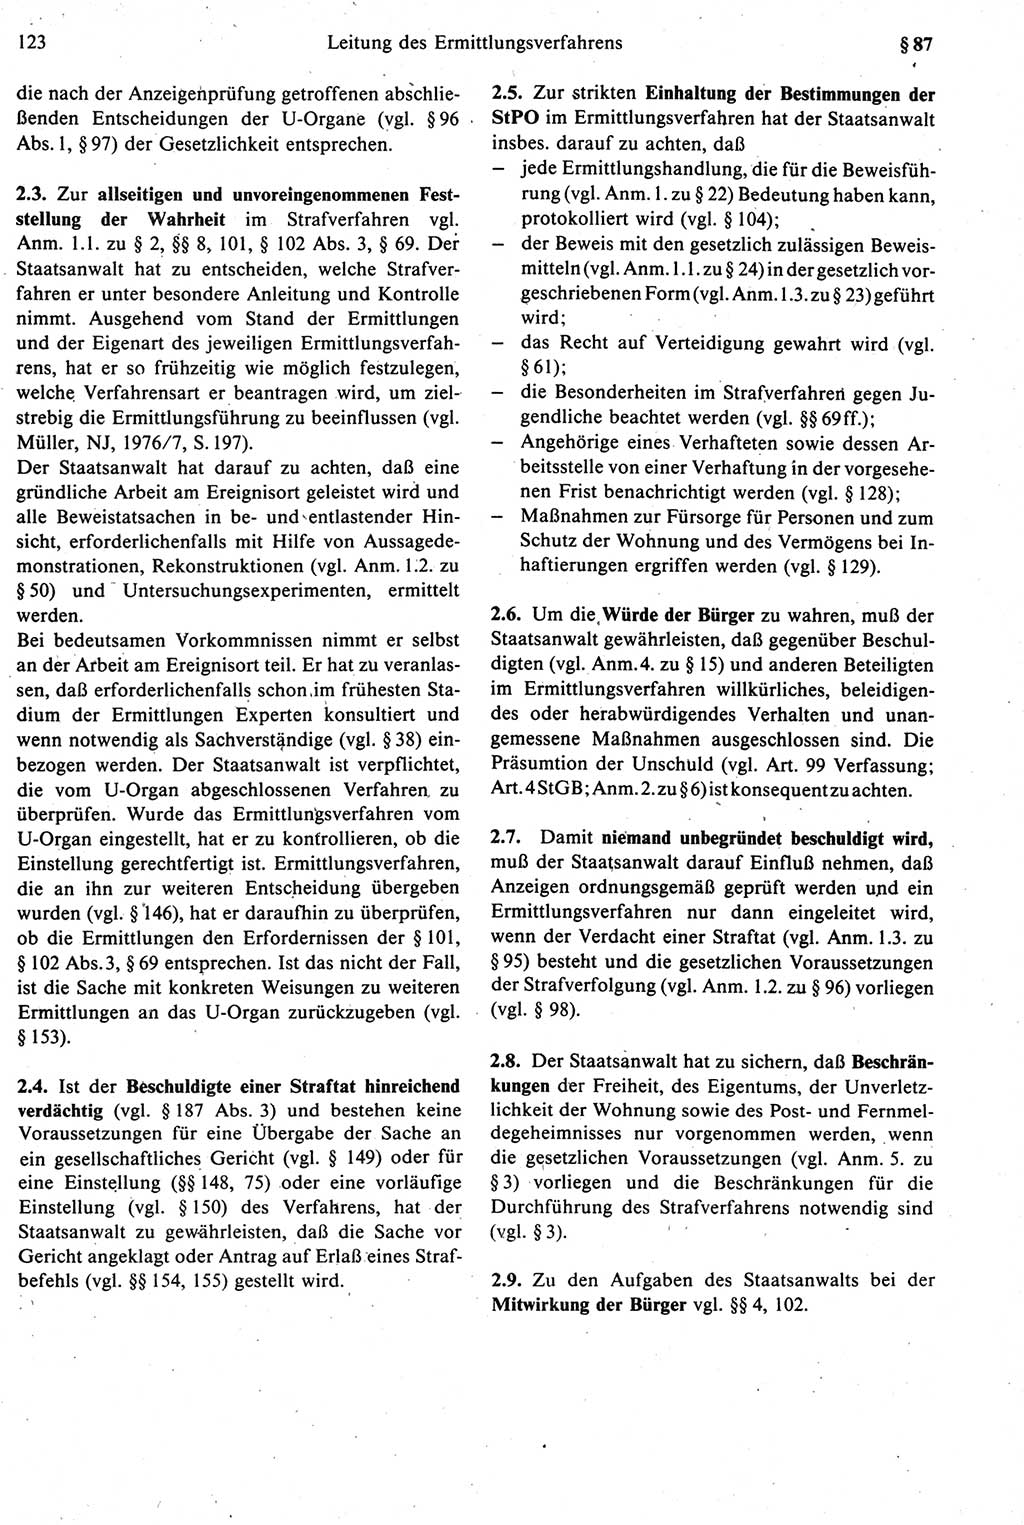 Strafprozeßrecht der DDR [Deutsche Demokratische Republik], Kommentar zur Strafprozeßordnung (StPO) 1987, Seite 123 (Strafprozeßr. DDR Komm. StPO 1987, S. 123)